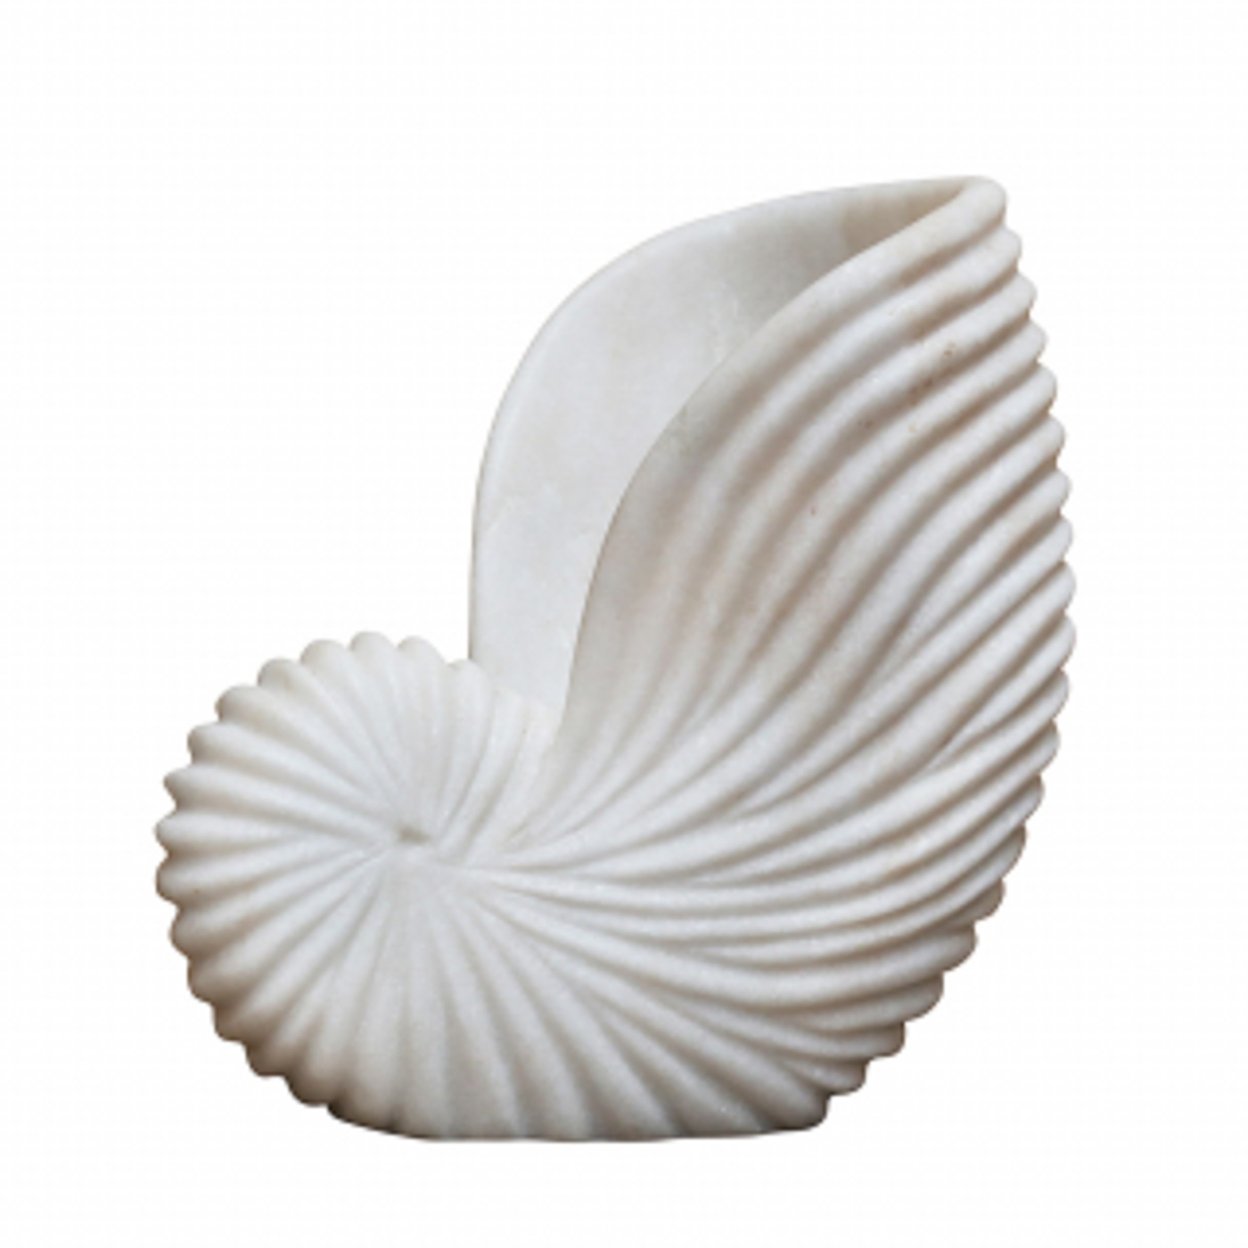 Nautilus Marble Shell - Large